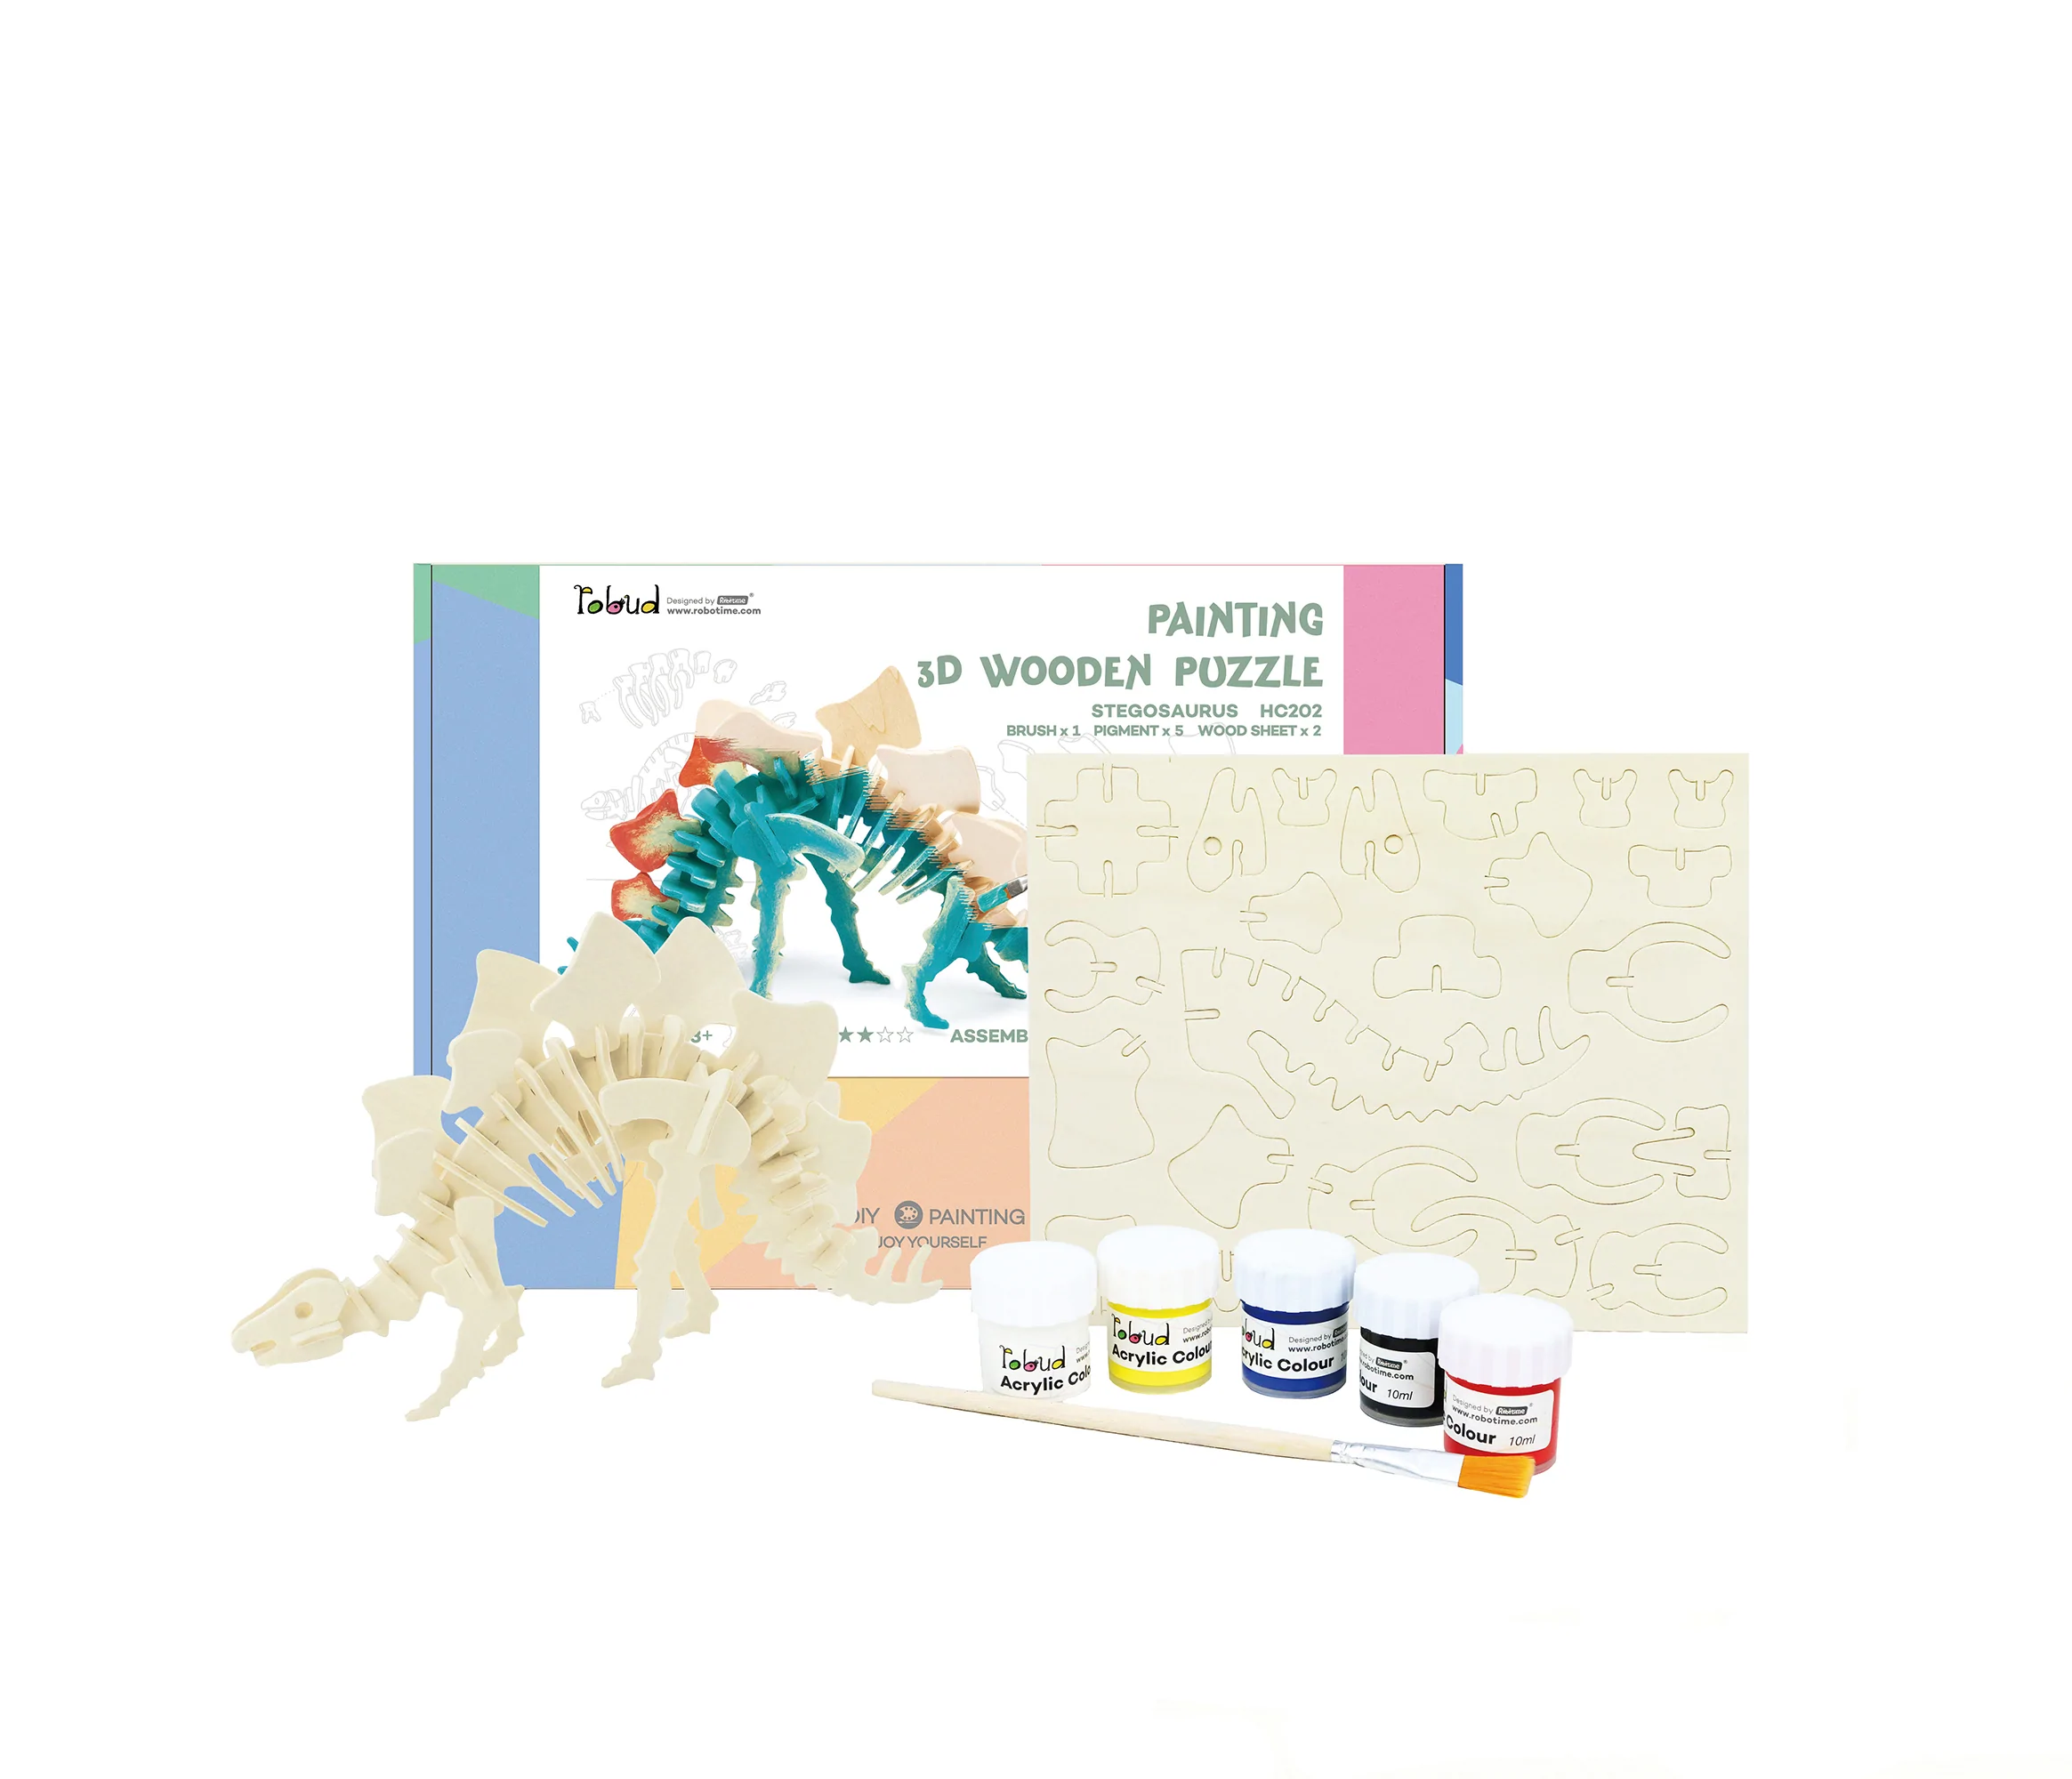 3D Wooden Puzzle Paint Kit | Stegosaurus image